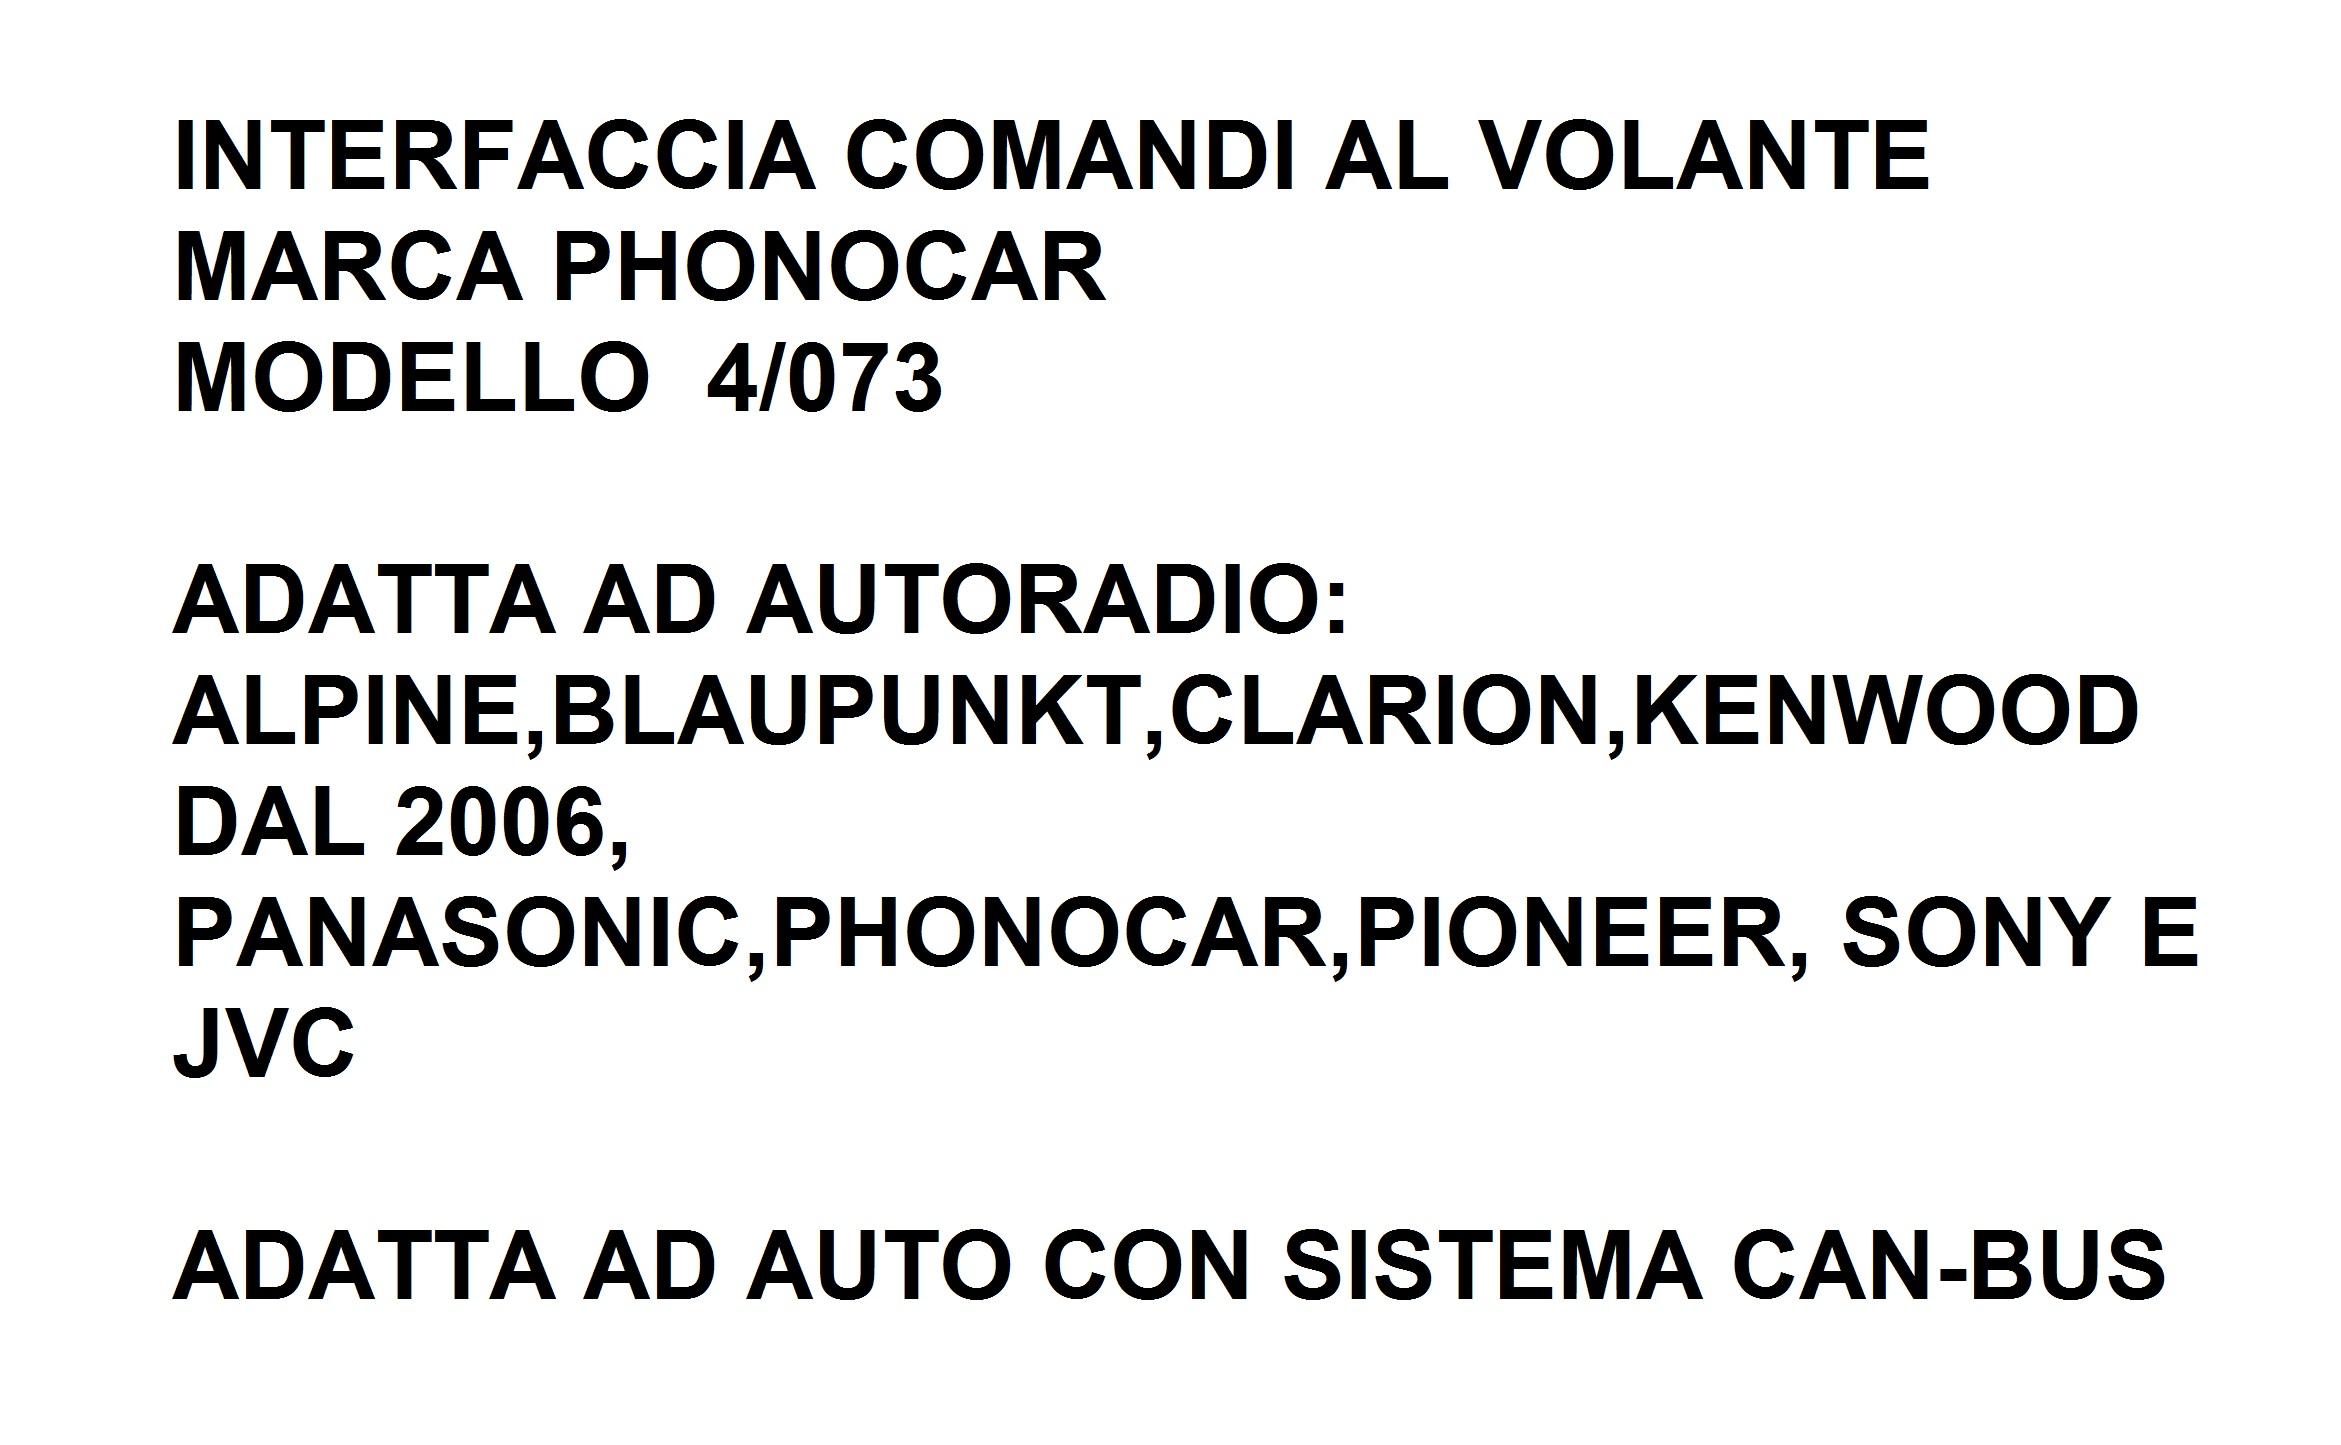 9550 - VW CARAVELLE DAL 2013 INTERFACCIA CAN-BUS&COMANDI AL VOLANTE 4/073PHONOCAR